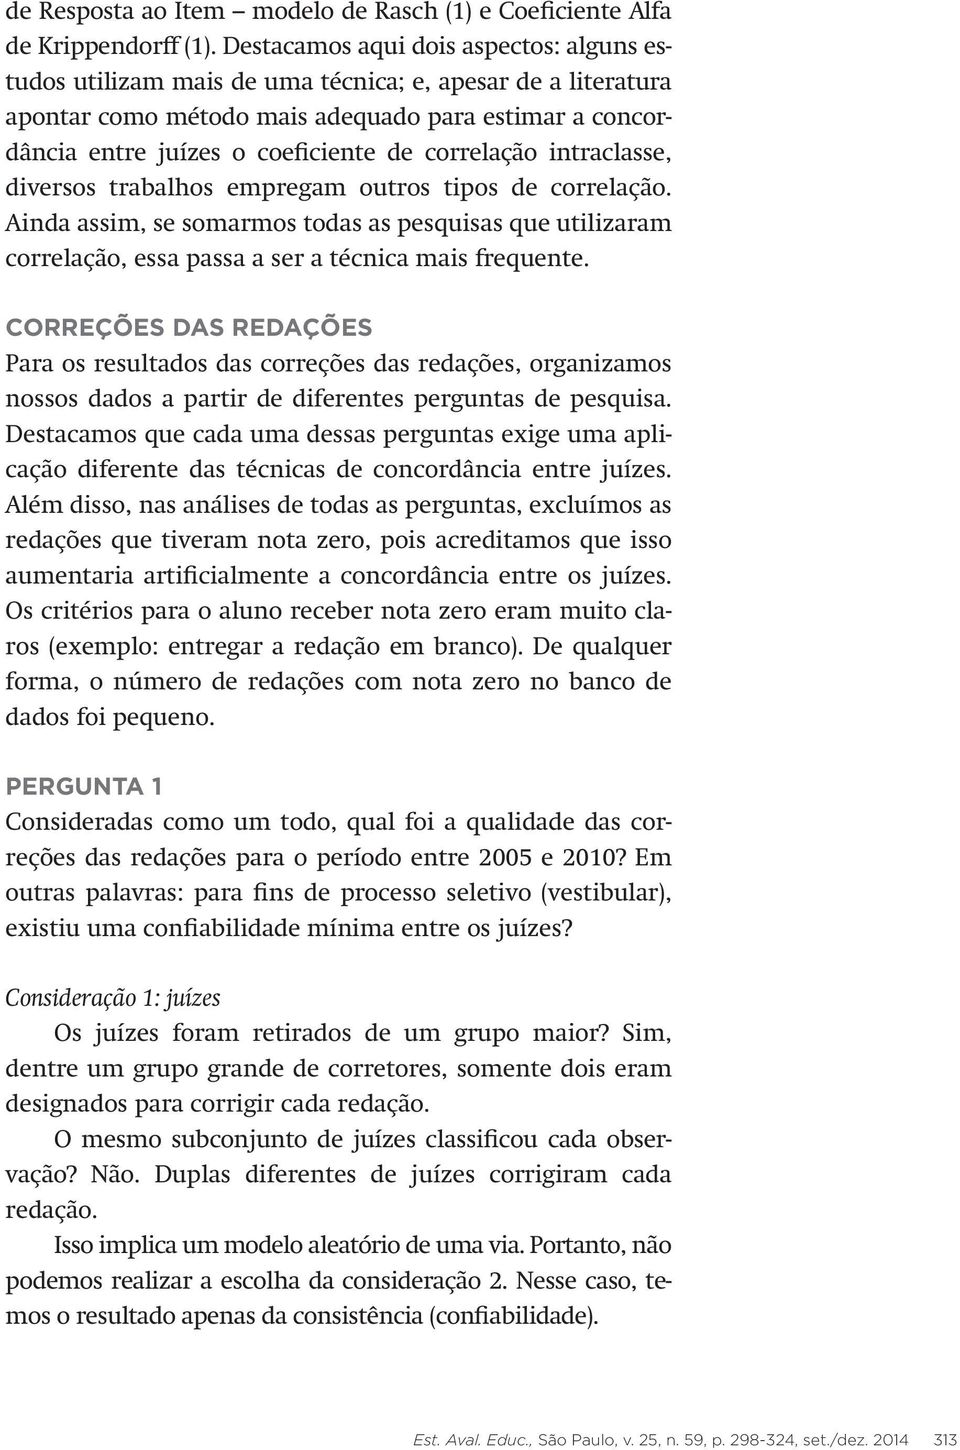 CONFIABILIDADE E CONCORDÂNCIA ENTRE JUÍZES: APLICAÇÕES NA ÁREA EDUCACIONAL  - PDF Download grátis